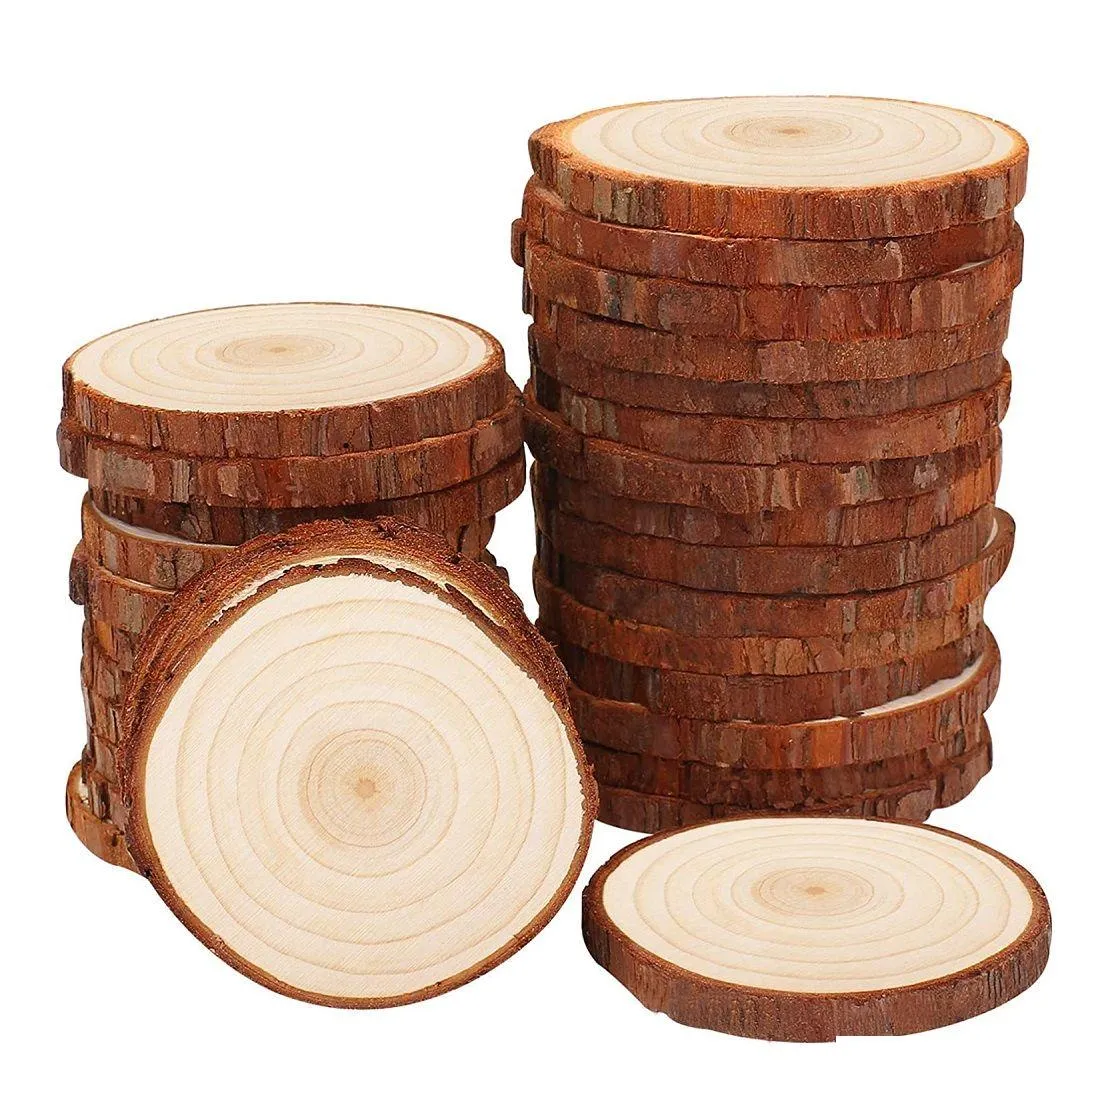 Herramientas artesanales Rodajas de madera natural Kit sin terminar Círculos de madera sin perforar de 14 pulgadas Sin agujero Rodaja de árbol con corteza para artes Dhzv2